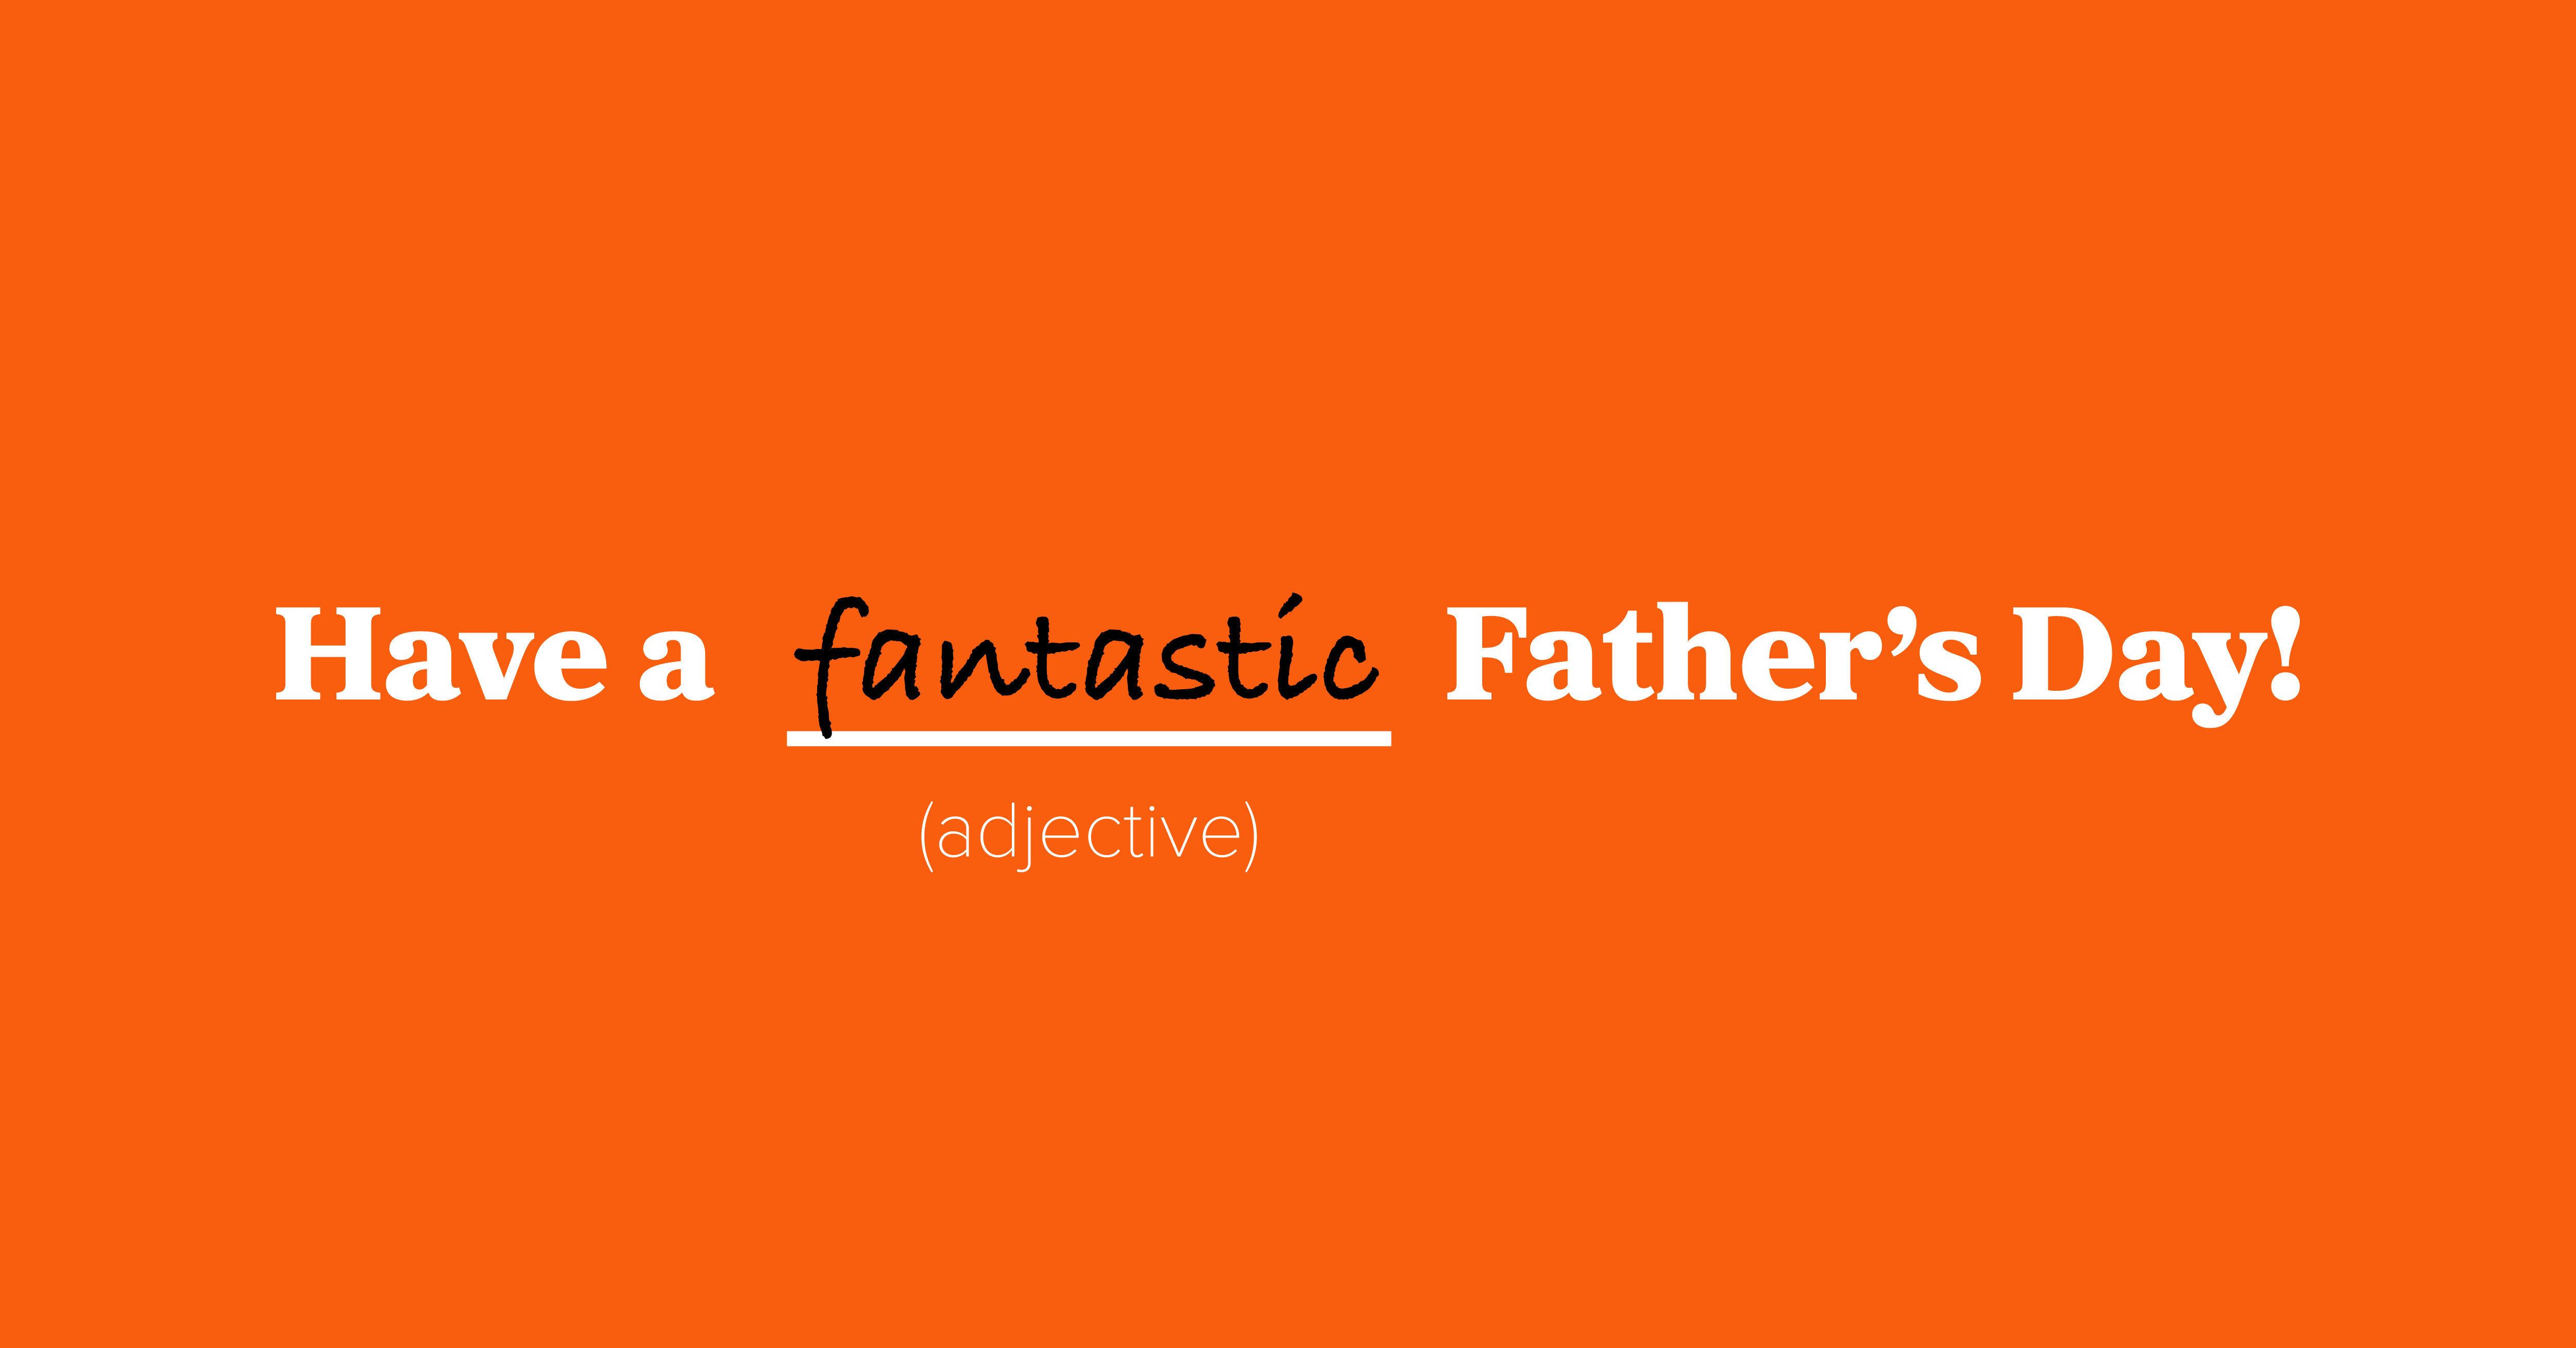 FathersDay-BuzzBlog-Header